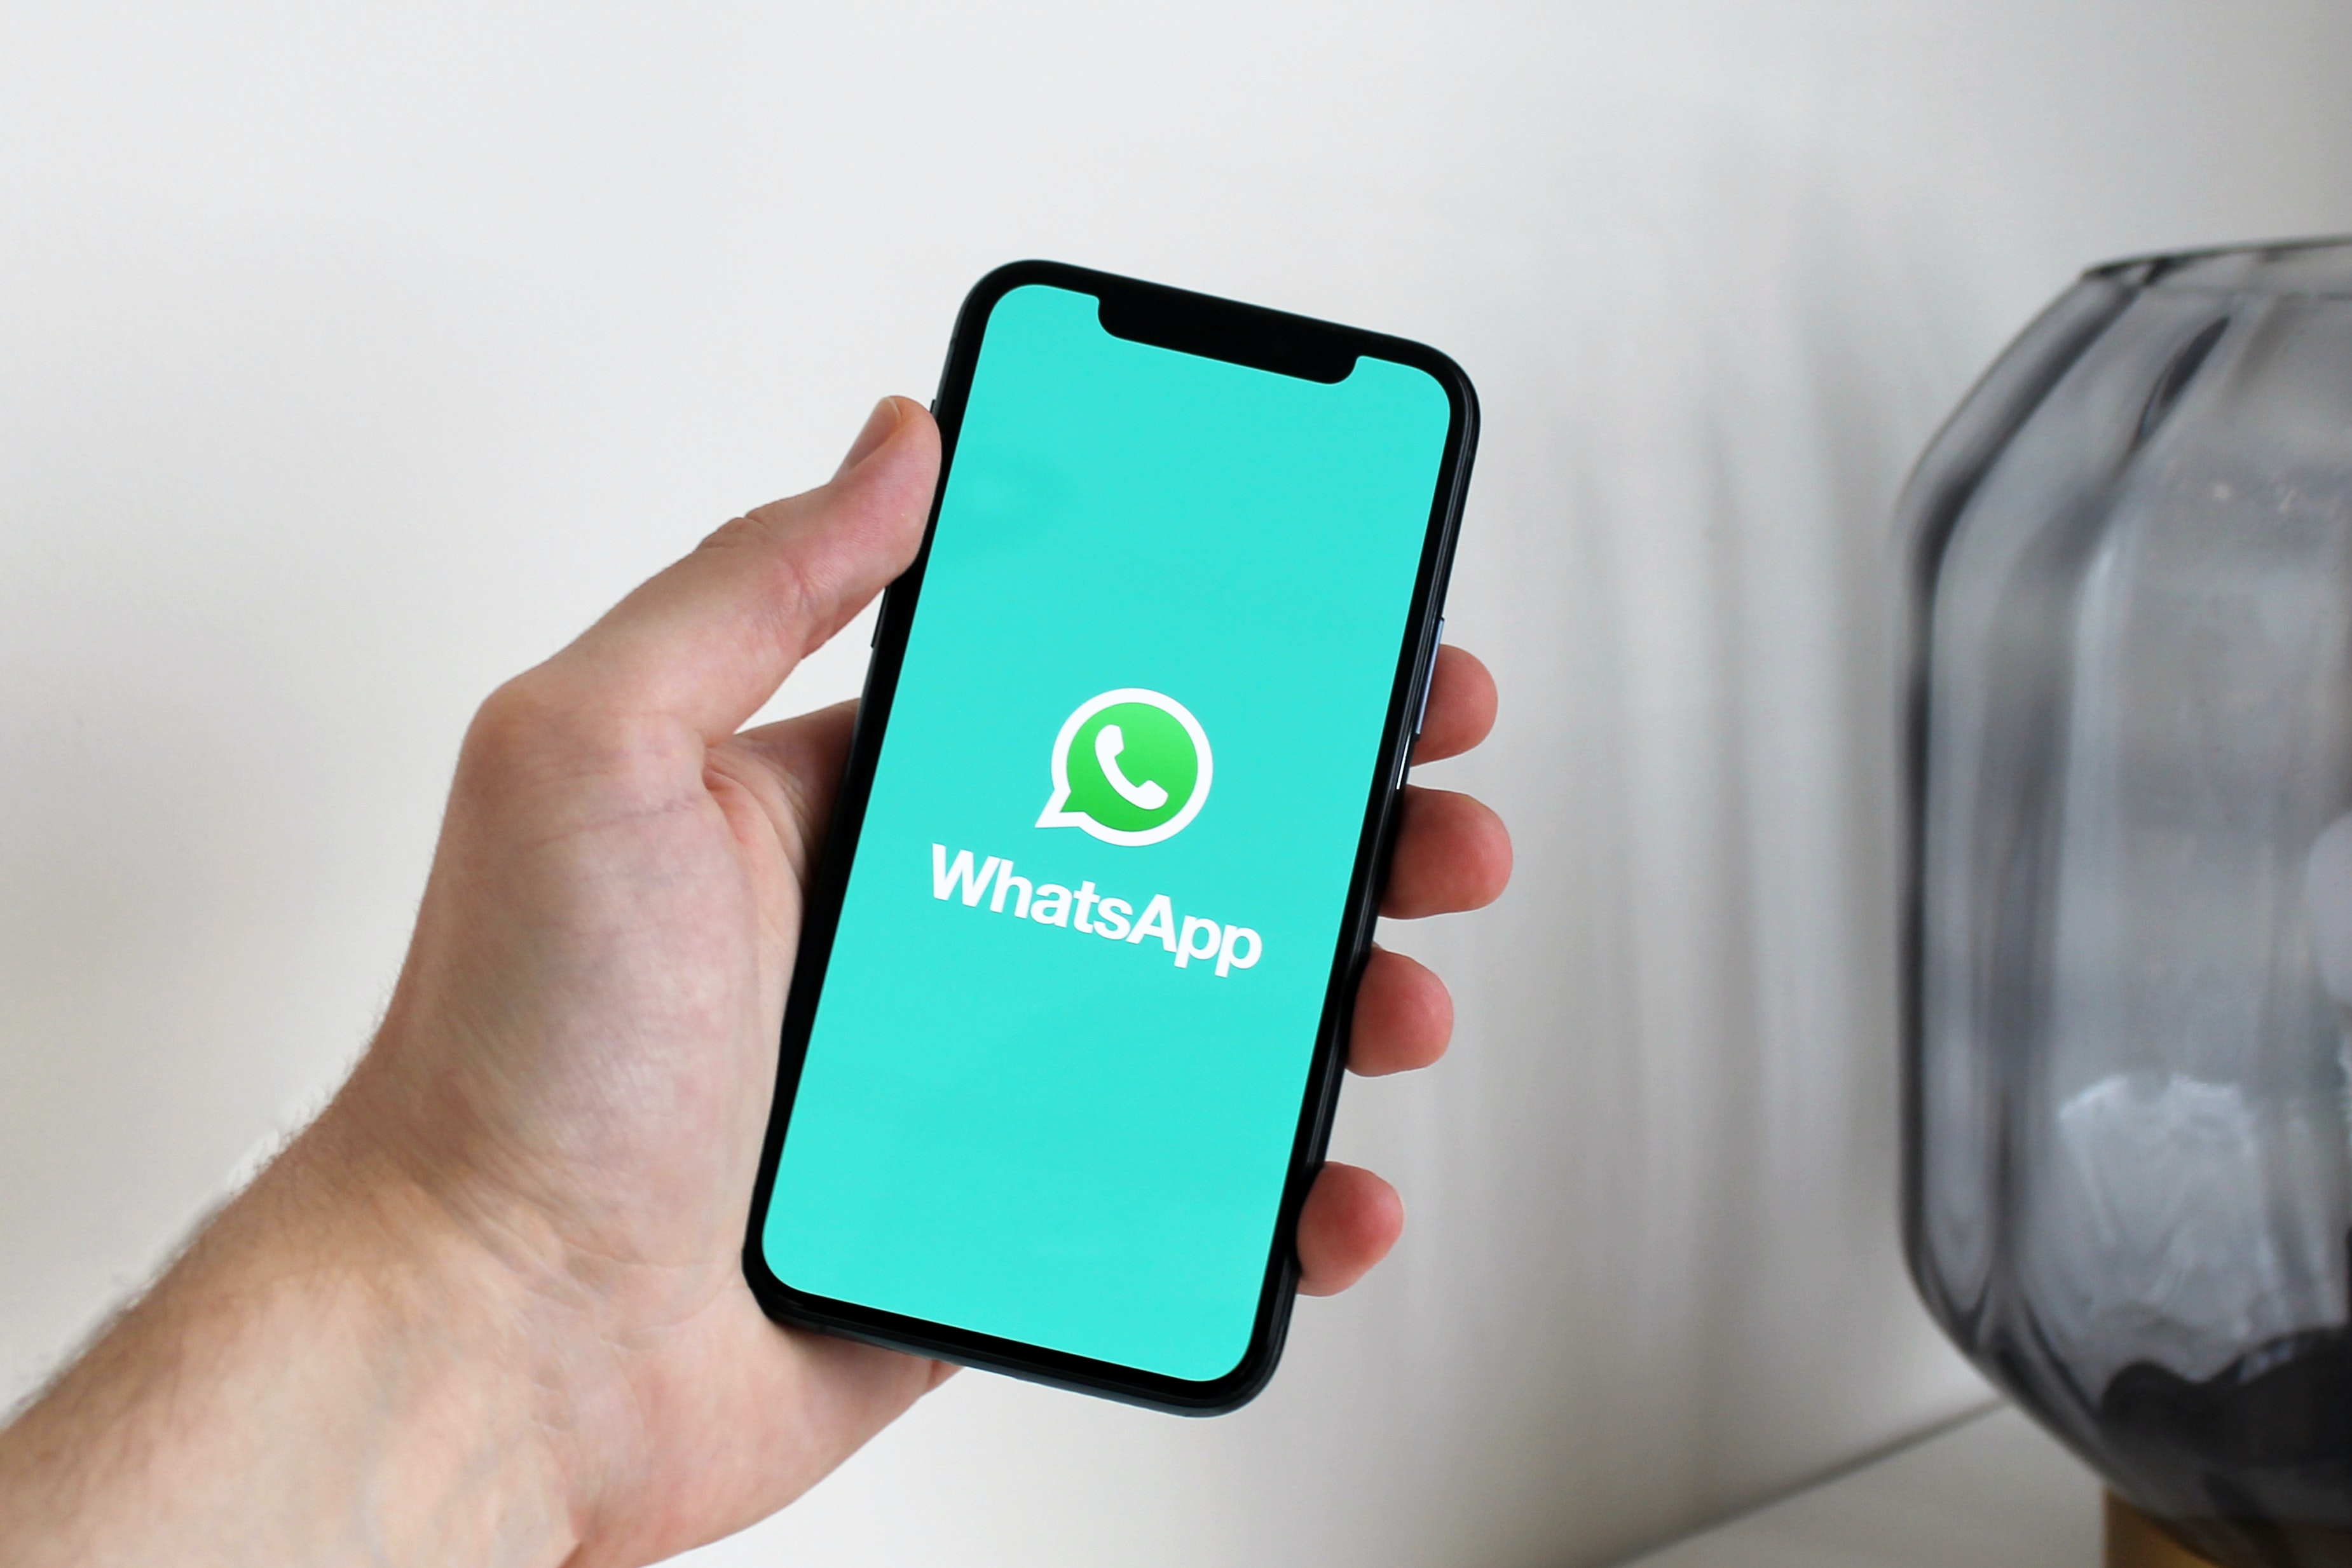 WhatsApp es una de las aplicaciones de mensajería más utilizadas. (Foto Prensa Libre: Pexels)